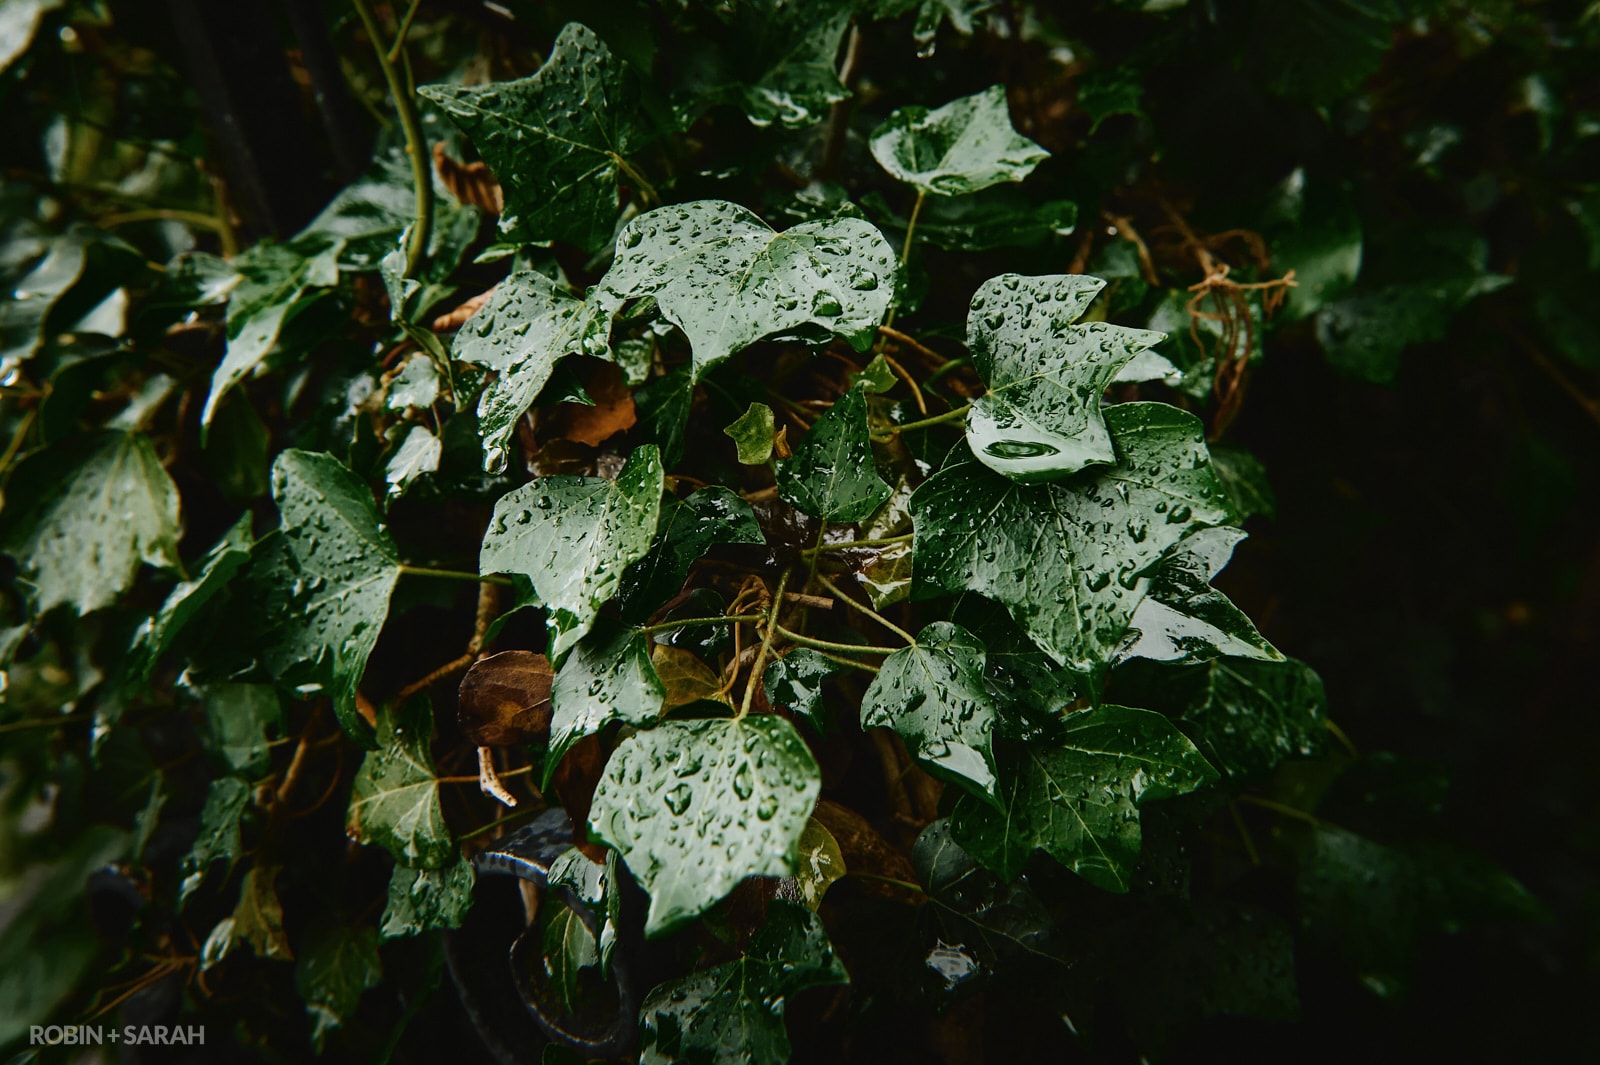 Rainwater in ivy leaves in churchyard